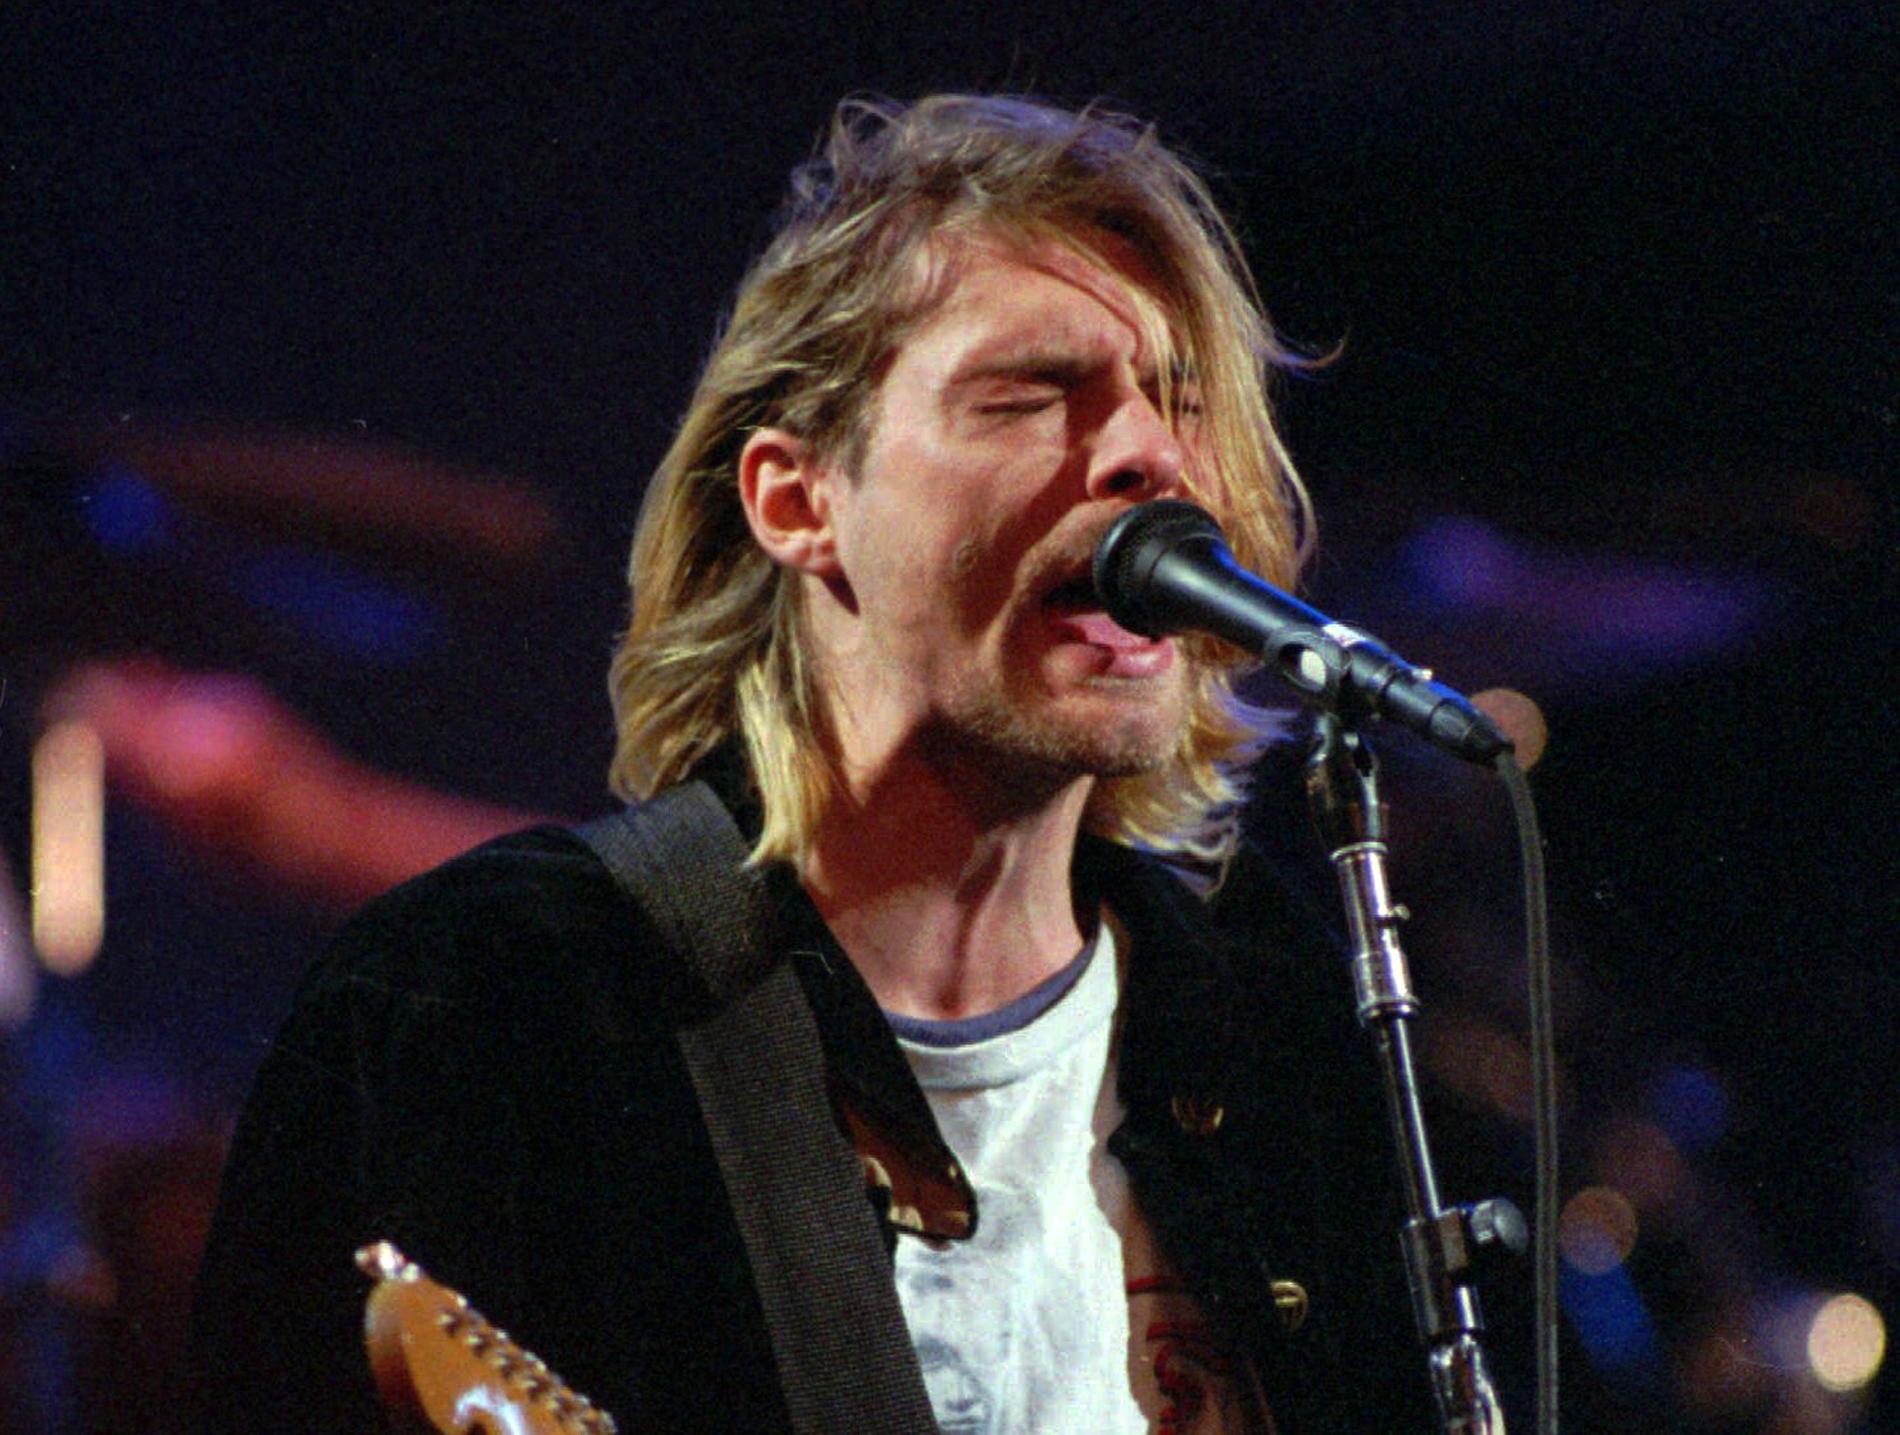 Den Fender Mustang-gitarr som Kurt Cobain spelade på i videon till "Smells like teen spirit" går under klubban på en auktion i maj.